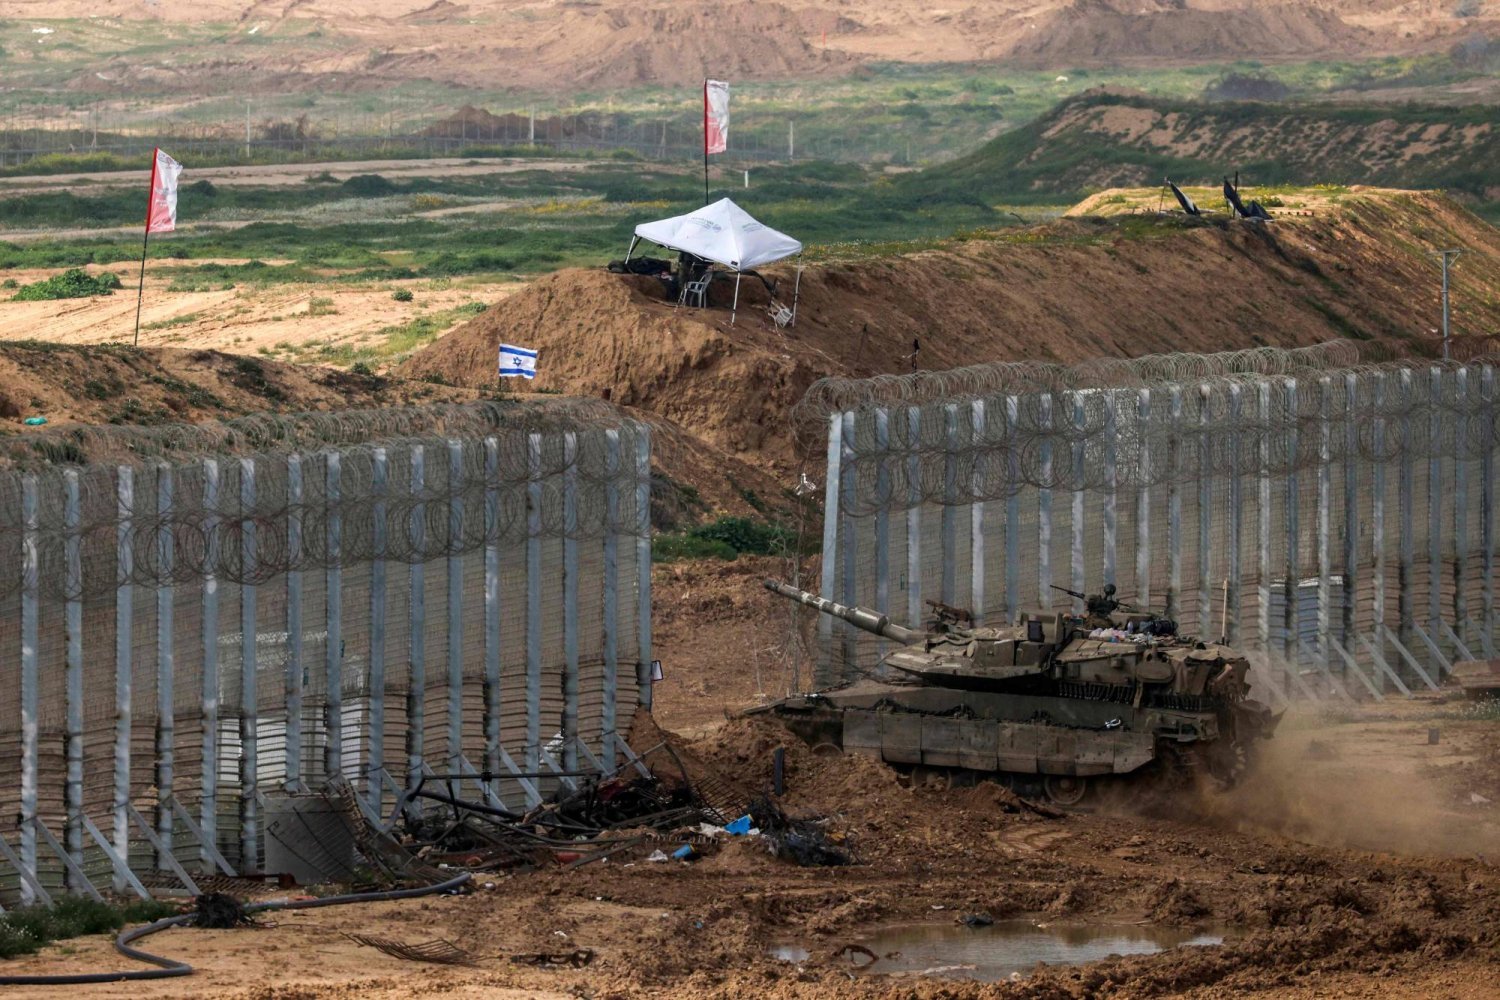 İsrail'in güneyindeki bir alandan çekilen bu fotoğraf, bir İsrail tankının sınırı geçerek Gazze'nin kuzeyine girdiğini gösteriyor (AFP)